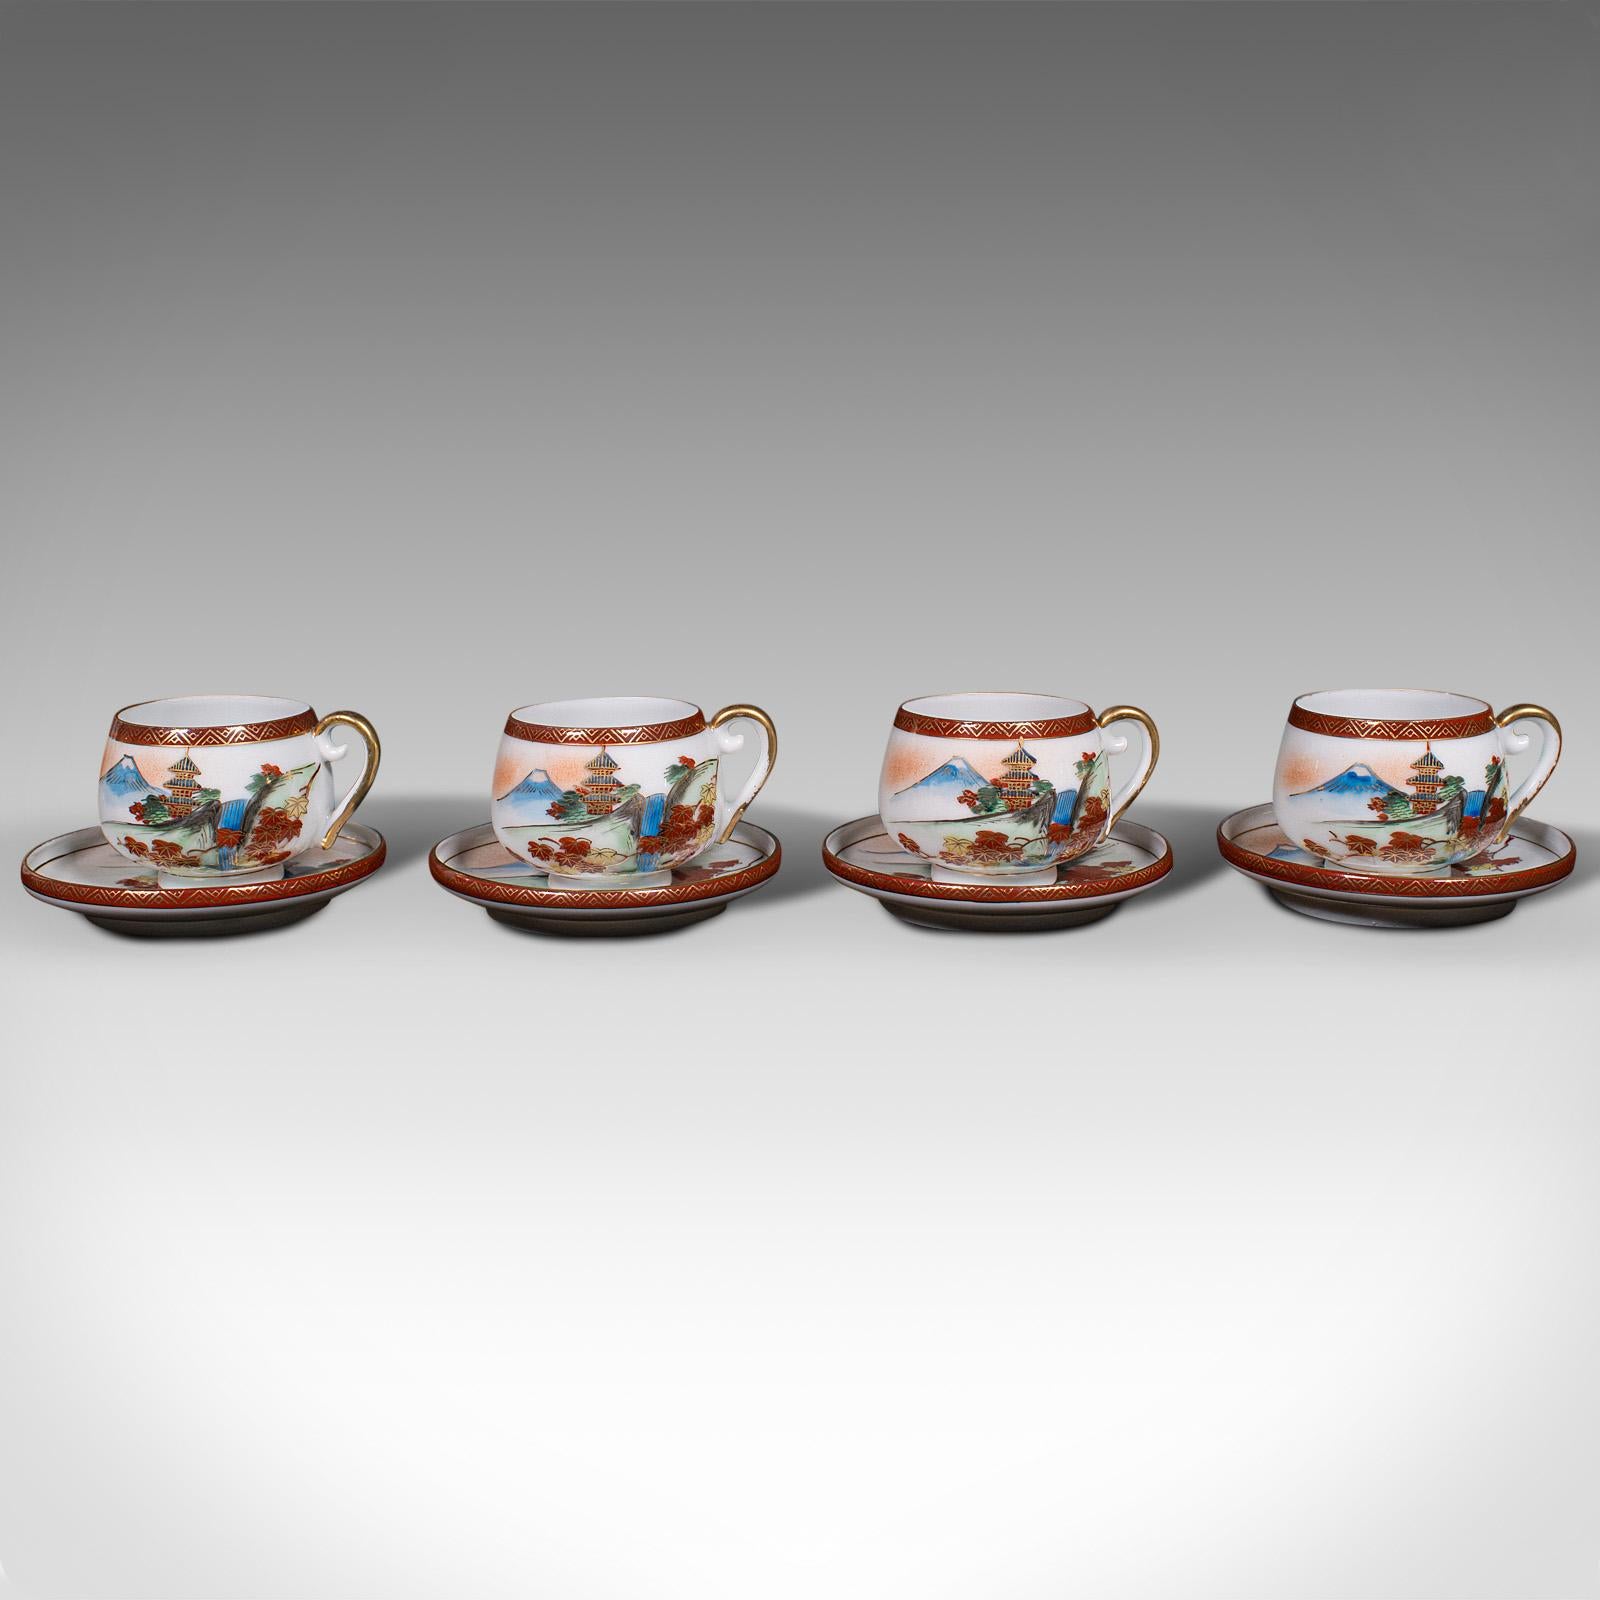 Dies ist ein Vintage-Teeservice für 4 Personen. Japanisches Teekannen- und Tassenservice aus Keramik in der Art der Arita-Ware, aus der späten Art-Déco-Periode, um 1940.

Hübsch dekoriertes Teeservice mit charmantem Landschaftsmotiv
Mit